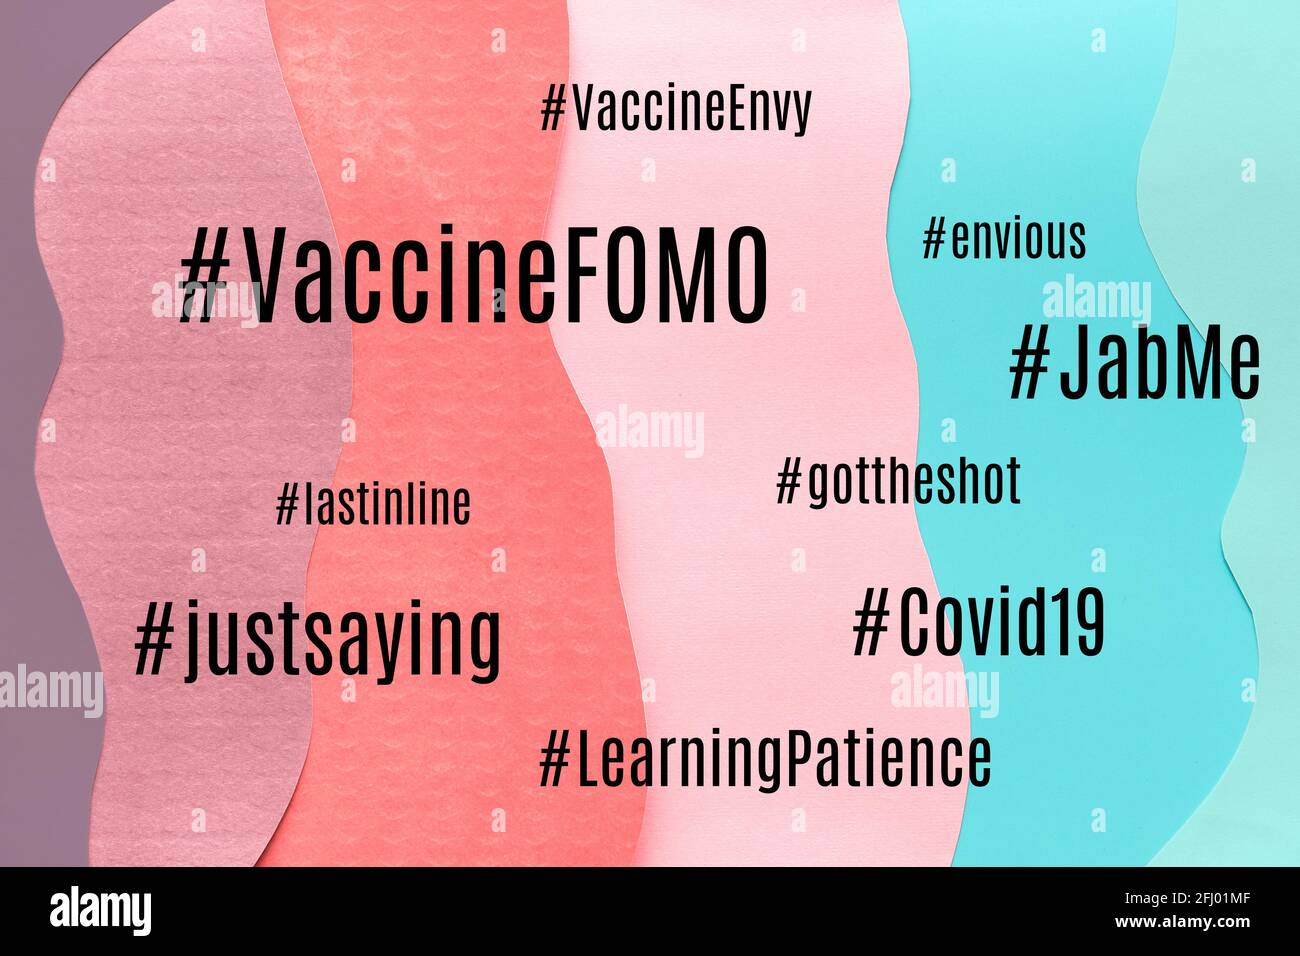 Vaccino FOMO hashtag. Paura di perdere, invidia da vaccini. Incertezza durante le pandemie di Covid-19. Nuvola di concetti e sentimenti correlati. Stratificato Foto Stock